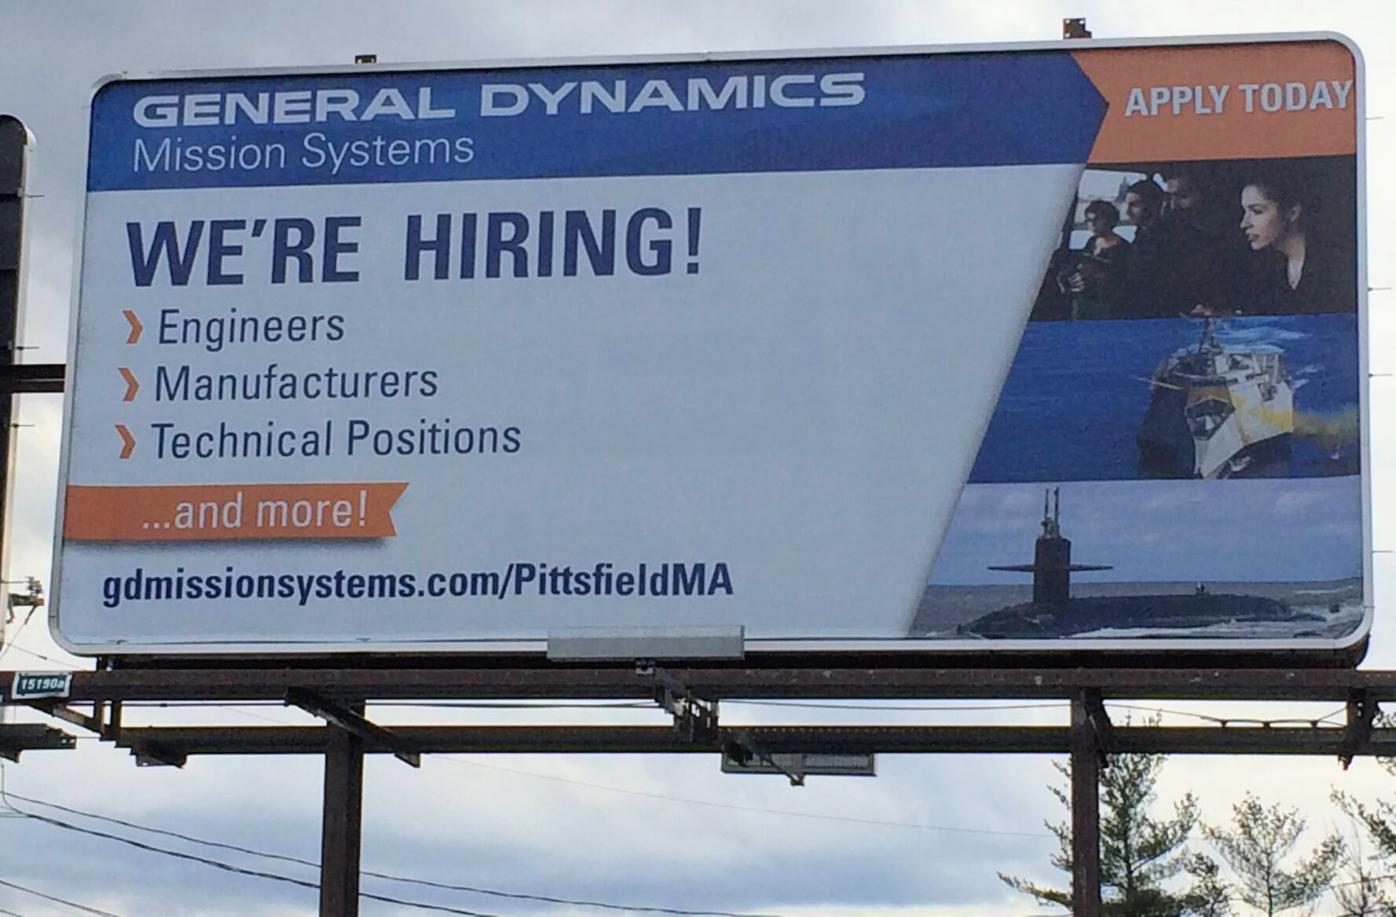 General Dynamics billboard